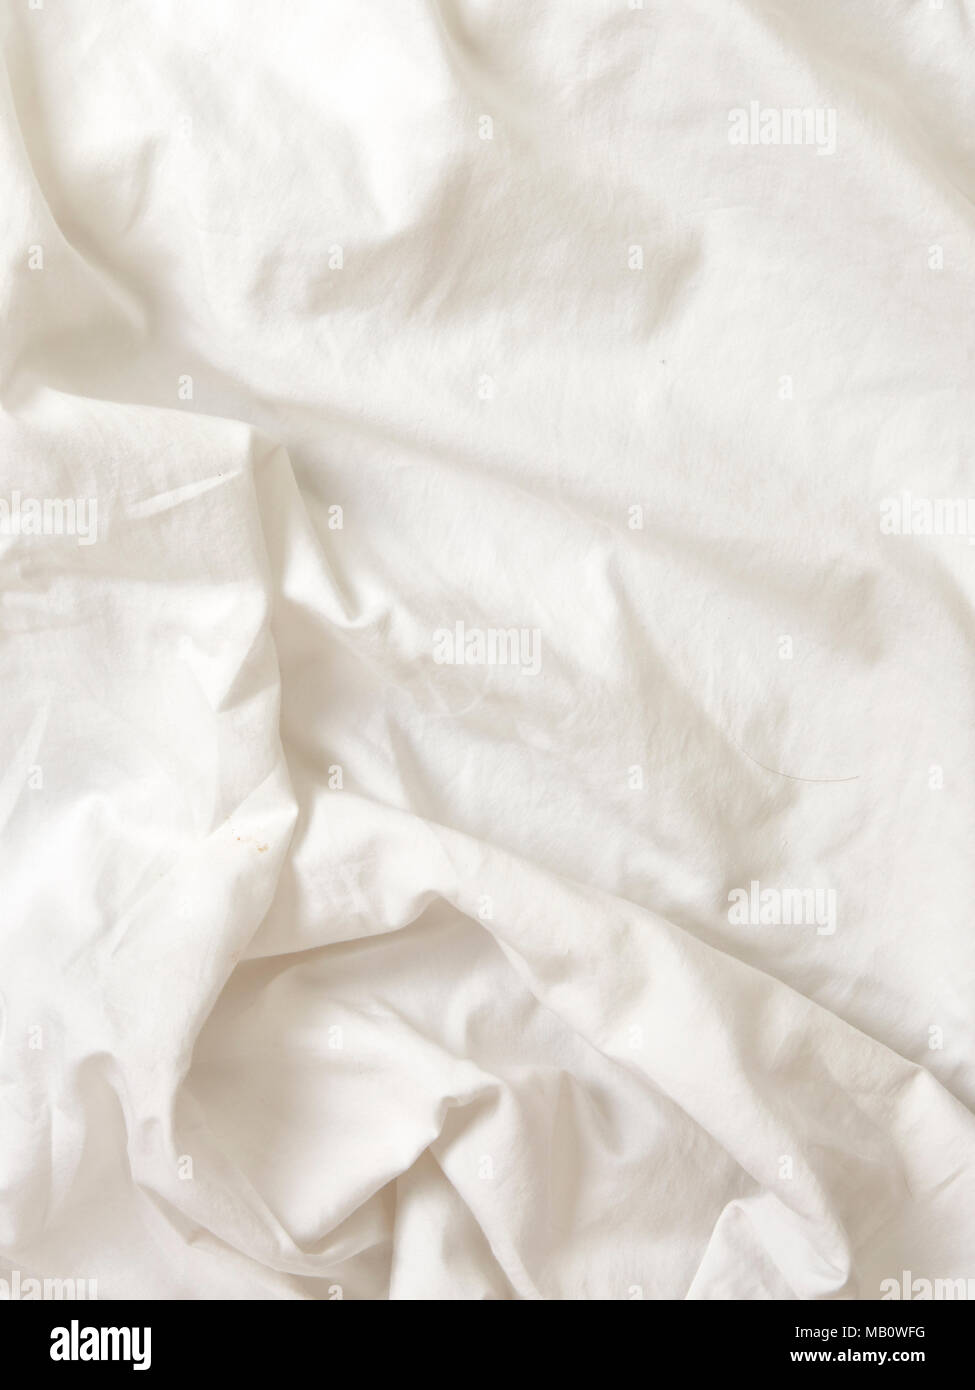 Tejido de algodón arrugado blancas sábanas fondo de textura Foto de stock